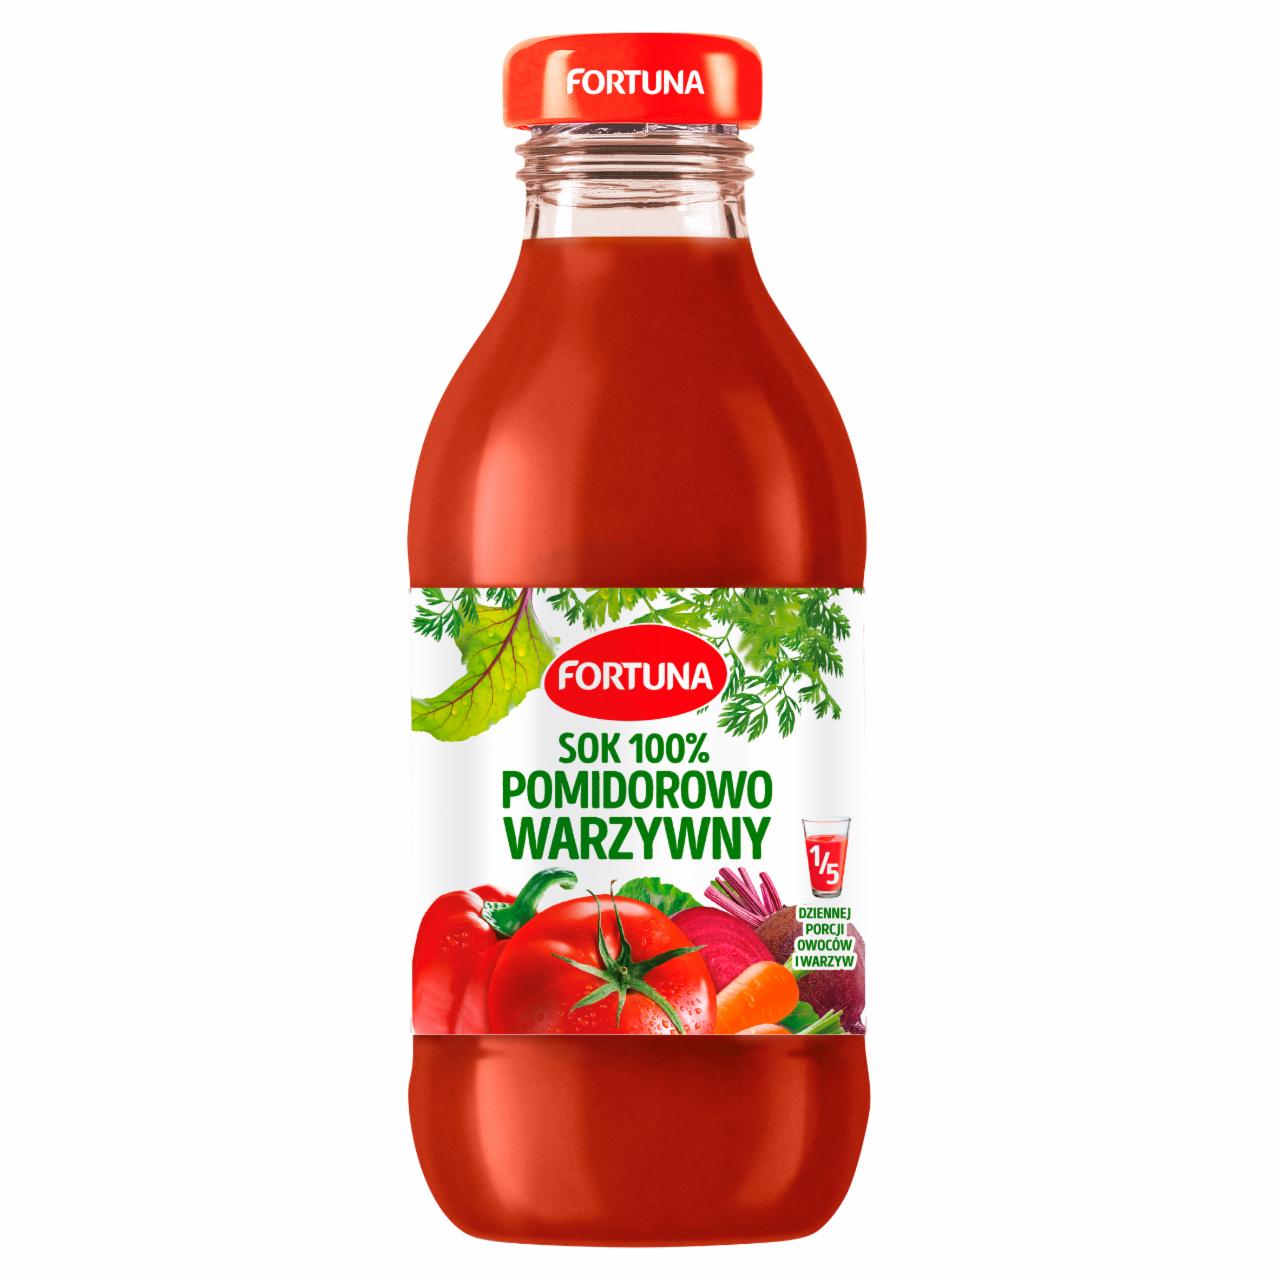 Zdjęcia - Sok 100% pomidorowo warzywny 300 ml Fortuna